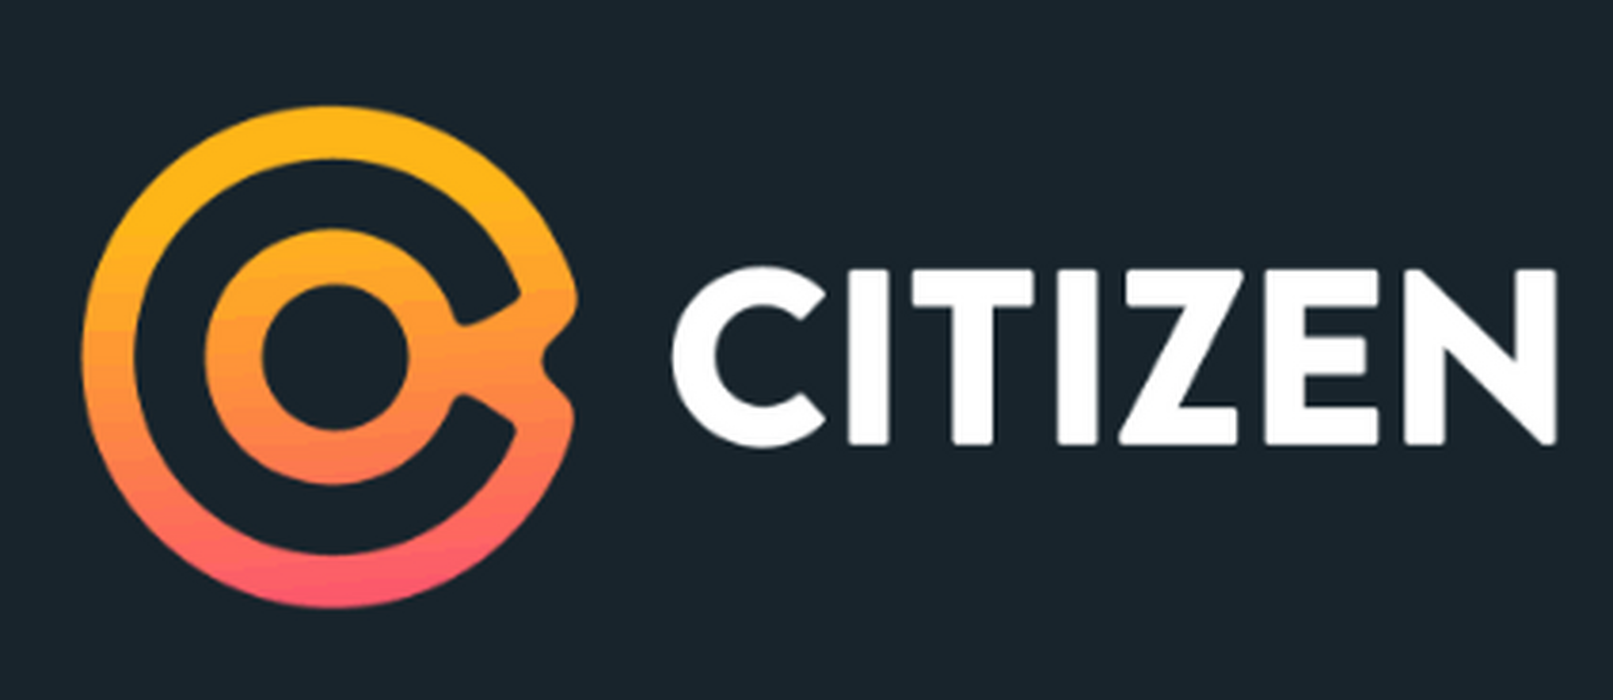 citizen-logo